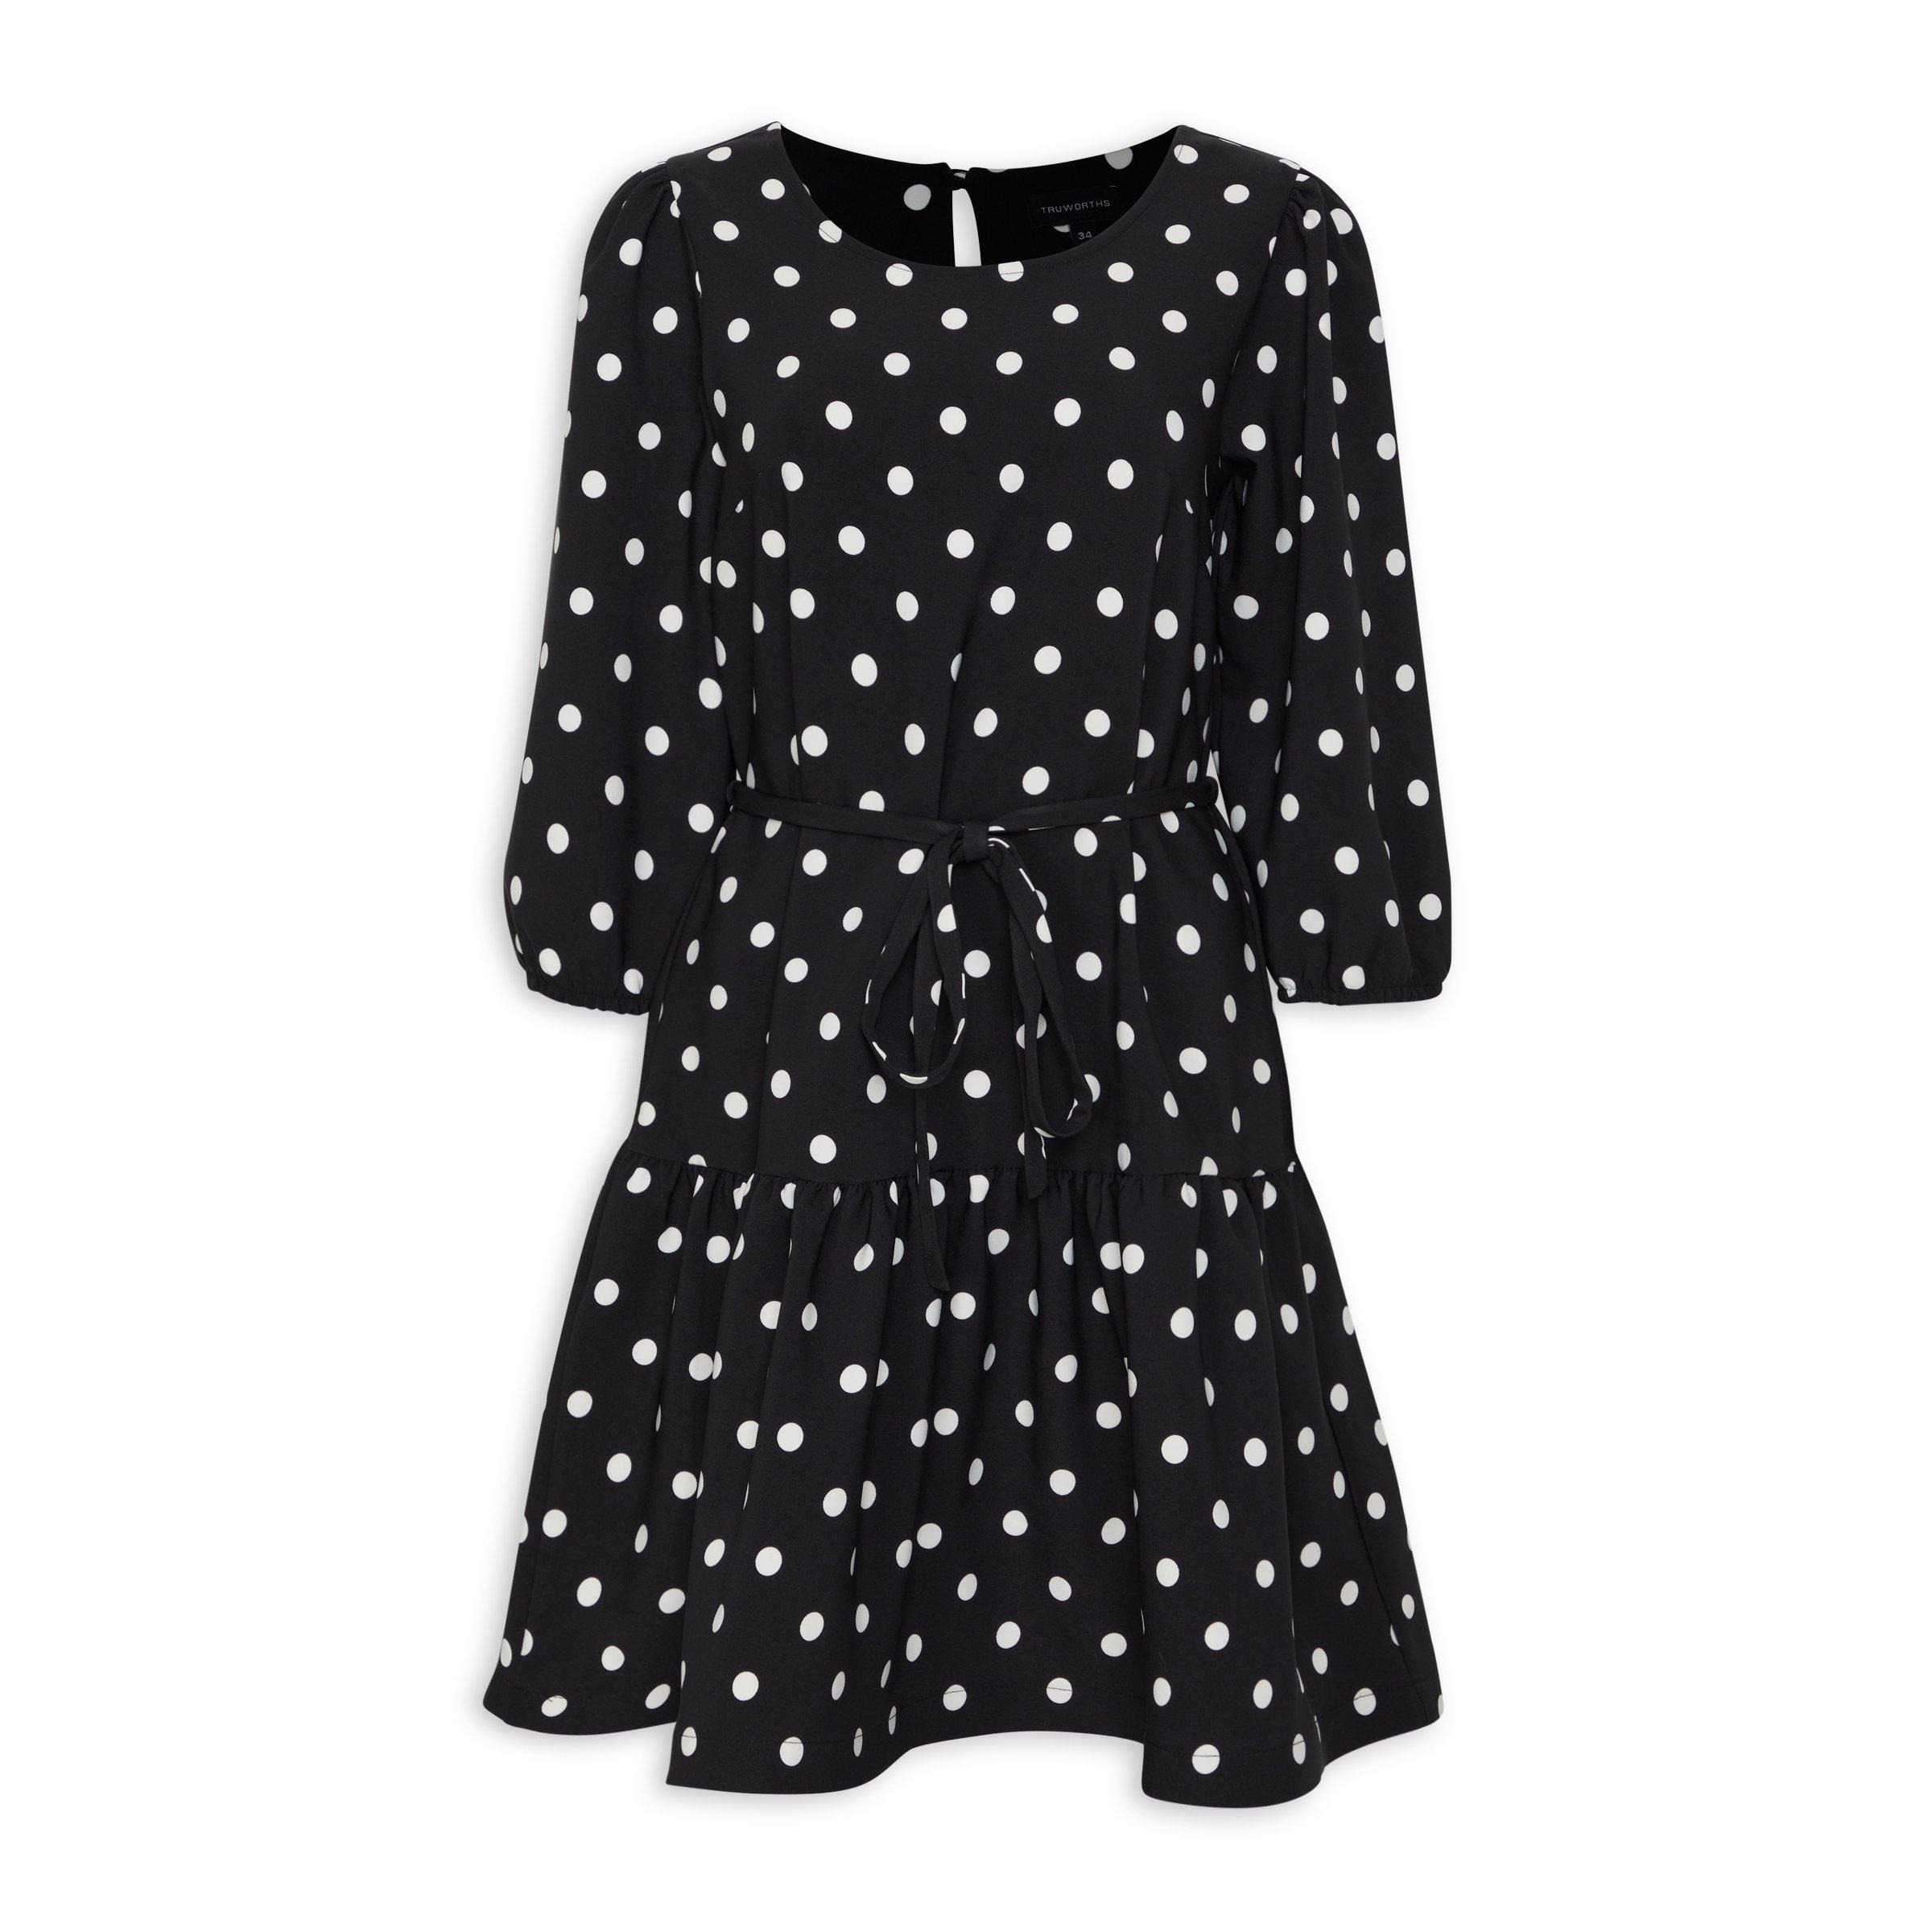 Spot A-Line Dress (3111234) | Truworths